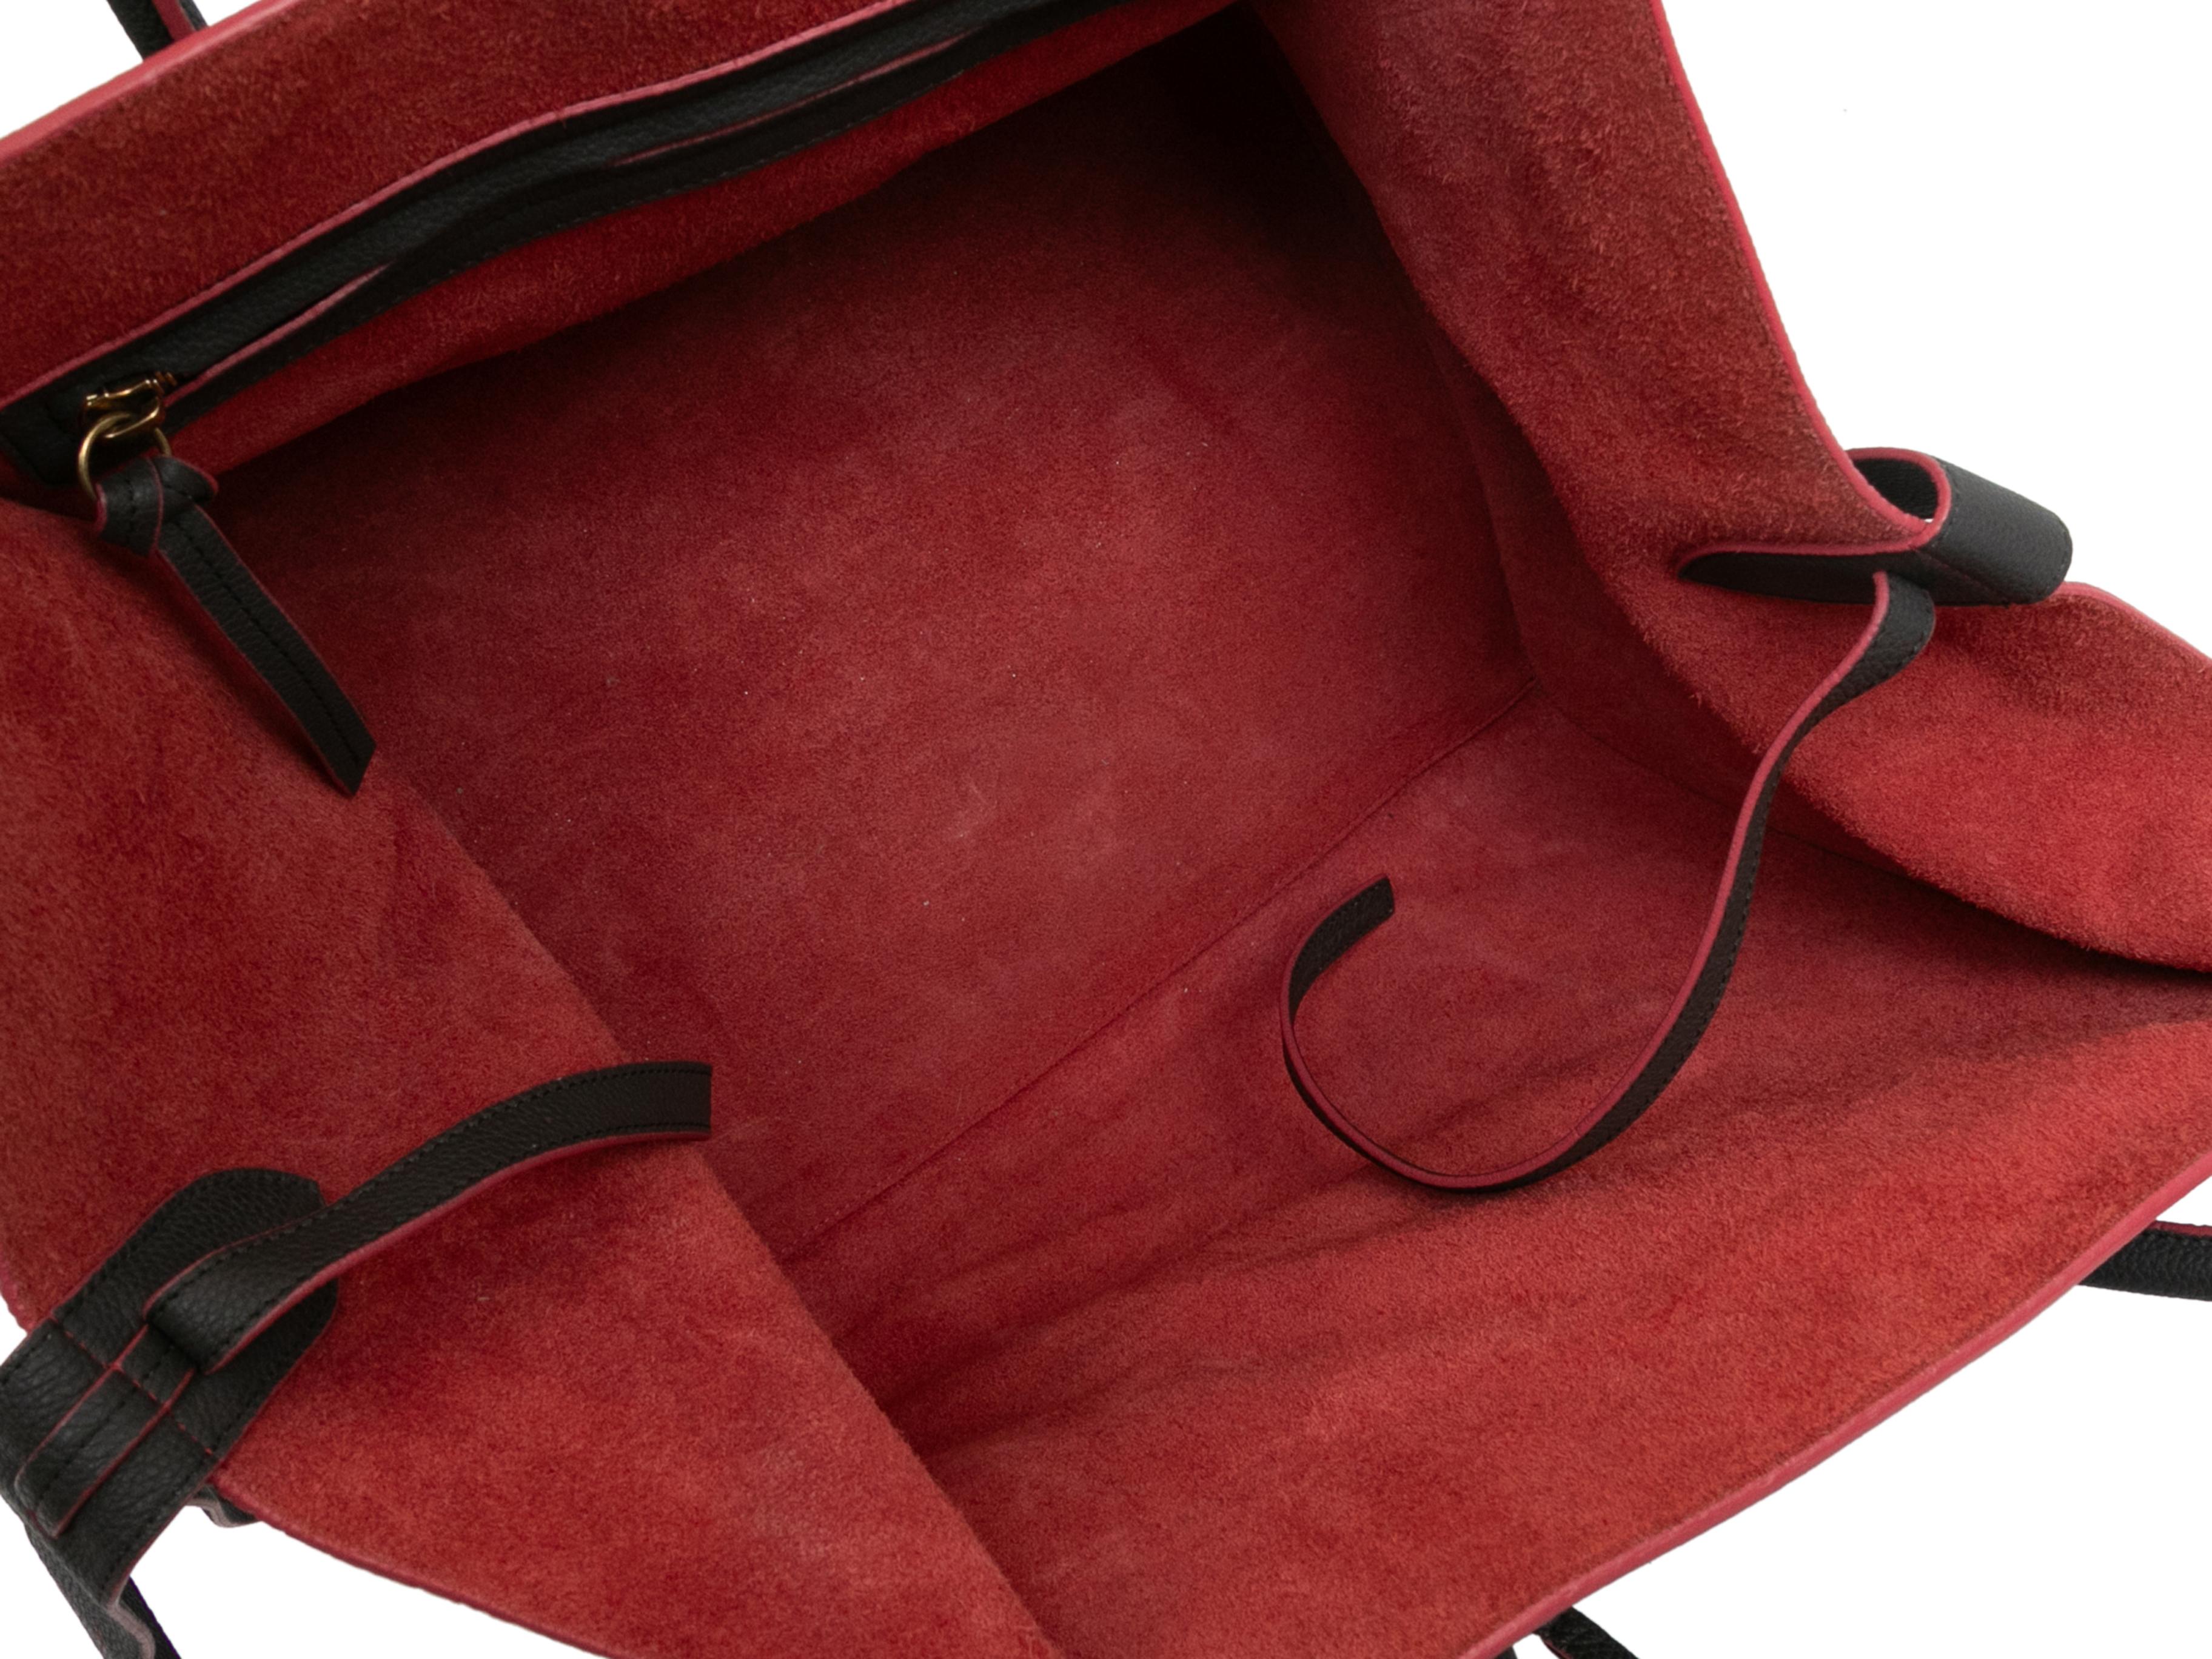 Kleine Phantom-Gepäcktasche in Holzkohle und Rot. Die kleine Phantom-Gepäcktasche hat einen Korpus aus Leder, eine Innenausstattung aus Wildleder, goldfarbene Beschläge, eine Reißverschlusstasche auf der Vorderseite und zwei gerollte Griffe oben.